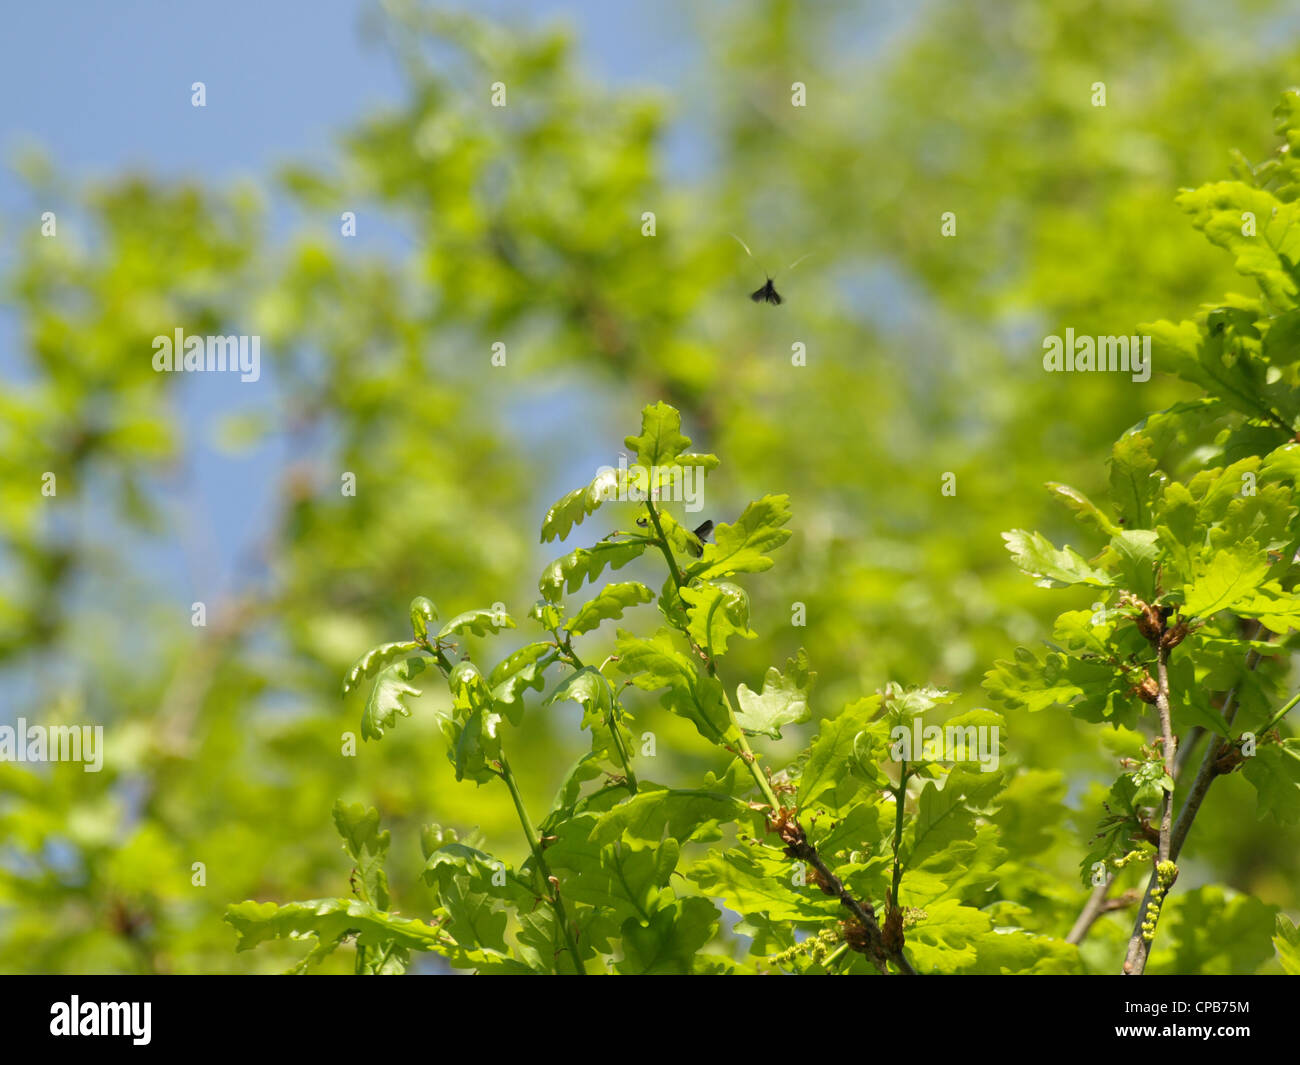 Green longhorn moth / Adela reaumurella swarming around a oak / Langhornmotten schwärmen um Eiche Stock Photo